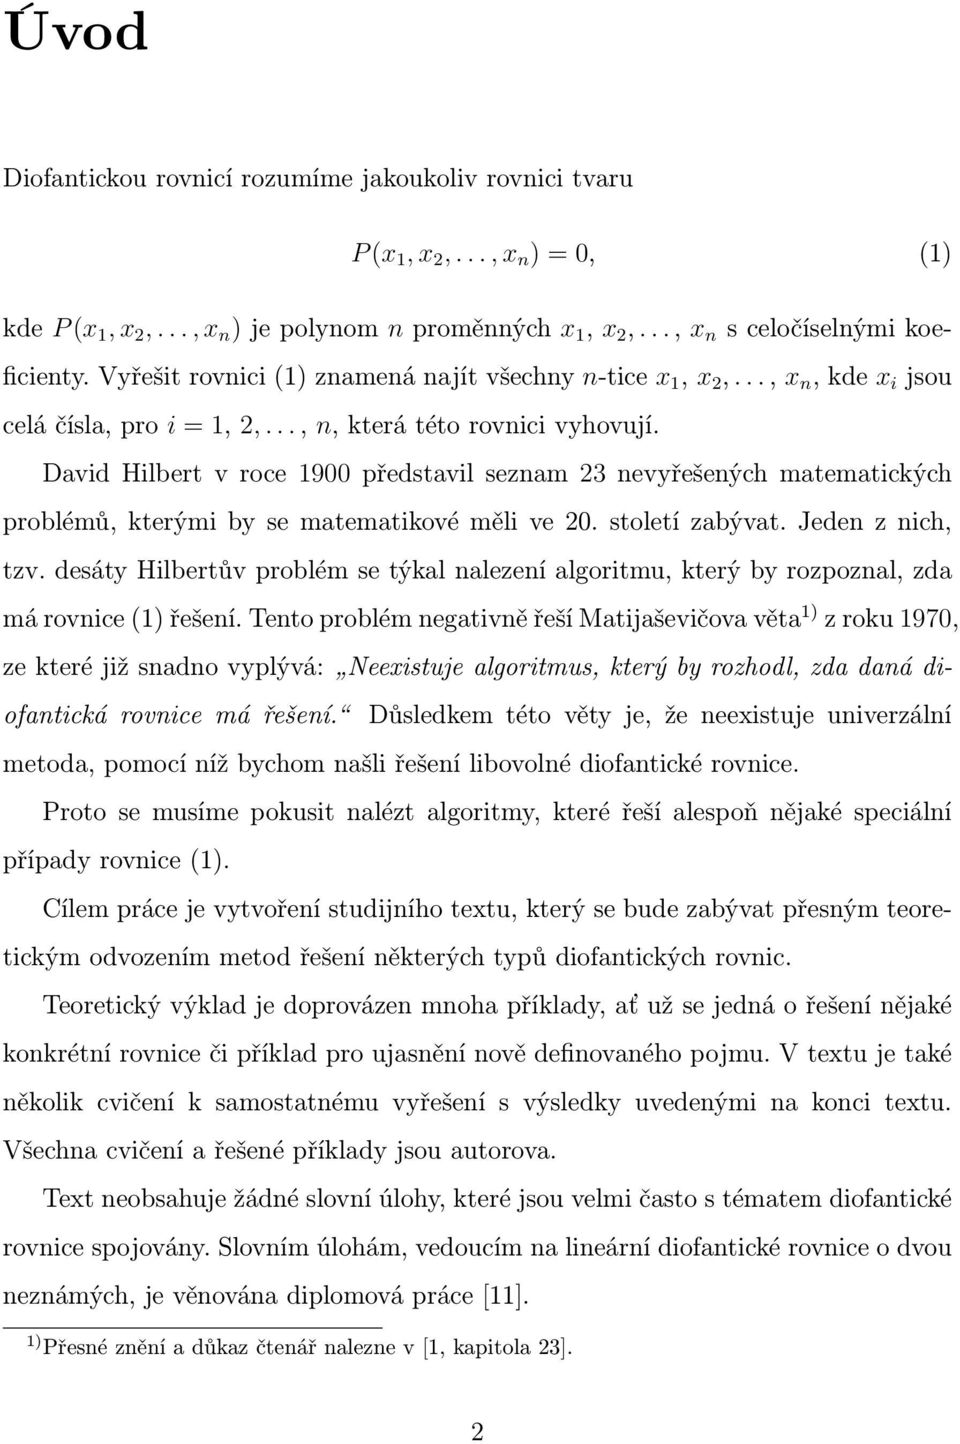 David Hilbert v roce 1900 představil seznam 23 nevyřešených matematických problémů, kterými by se matematikové měli ve 20. století zabývat. Jeden z nich, tzv.